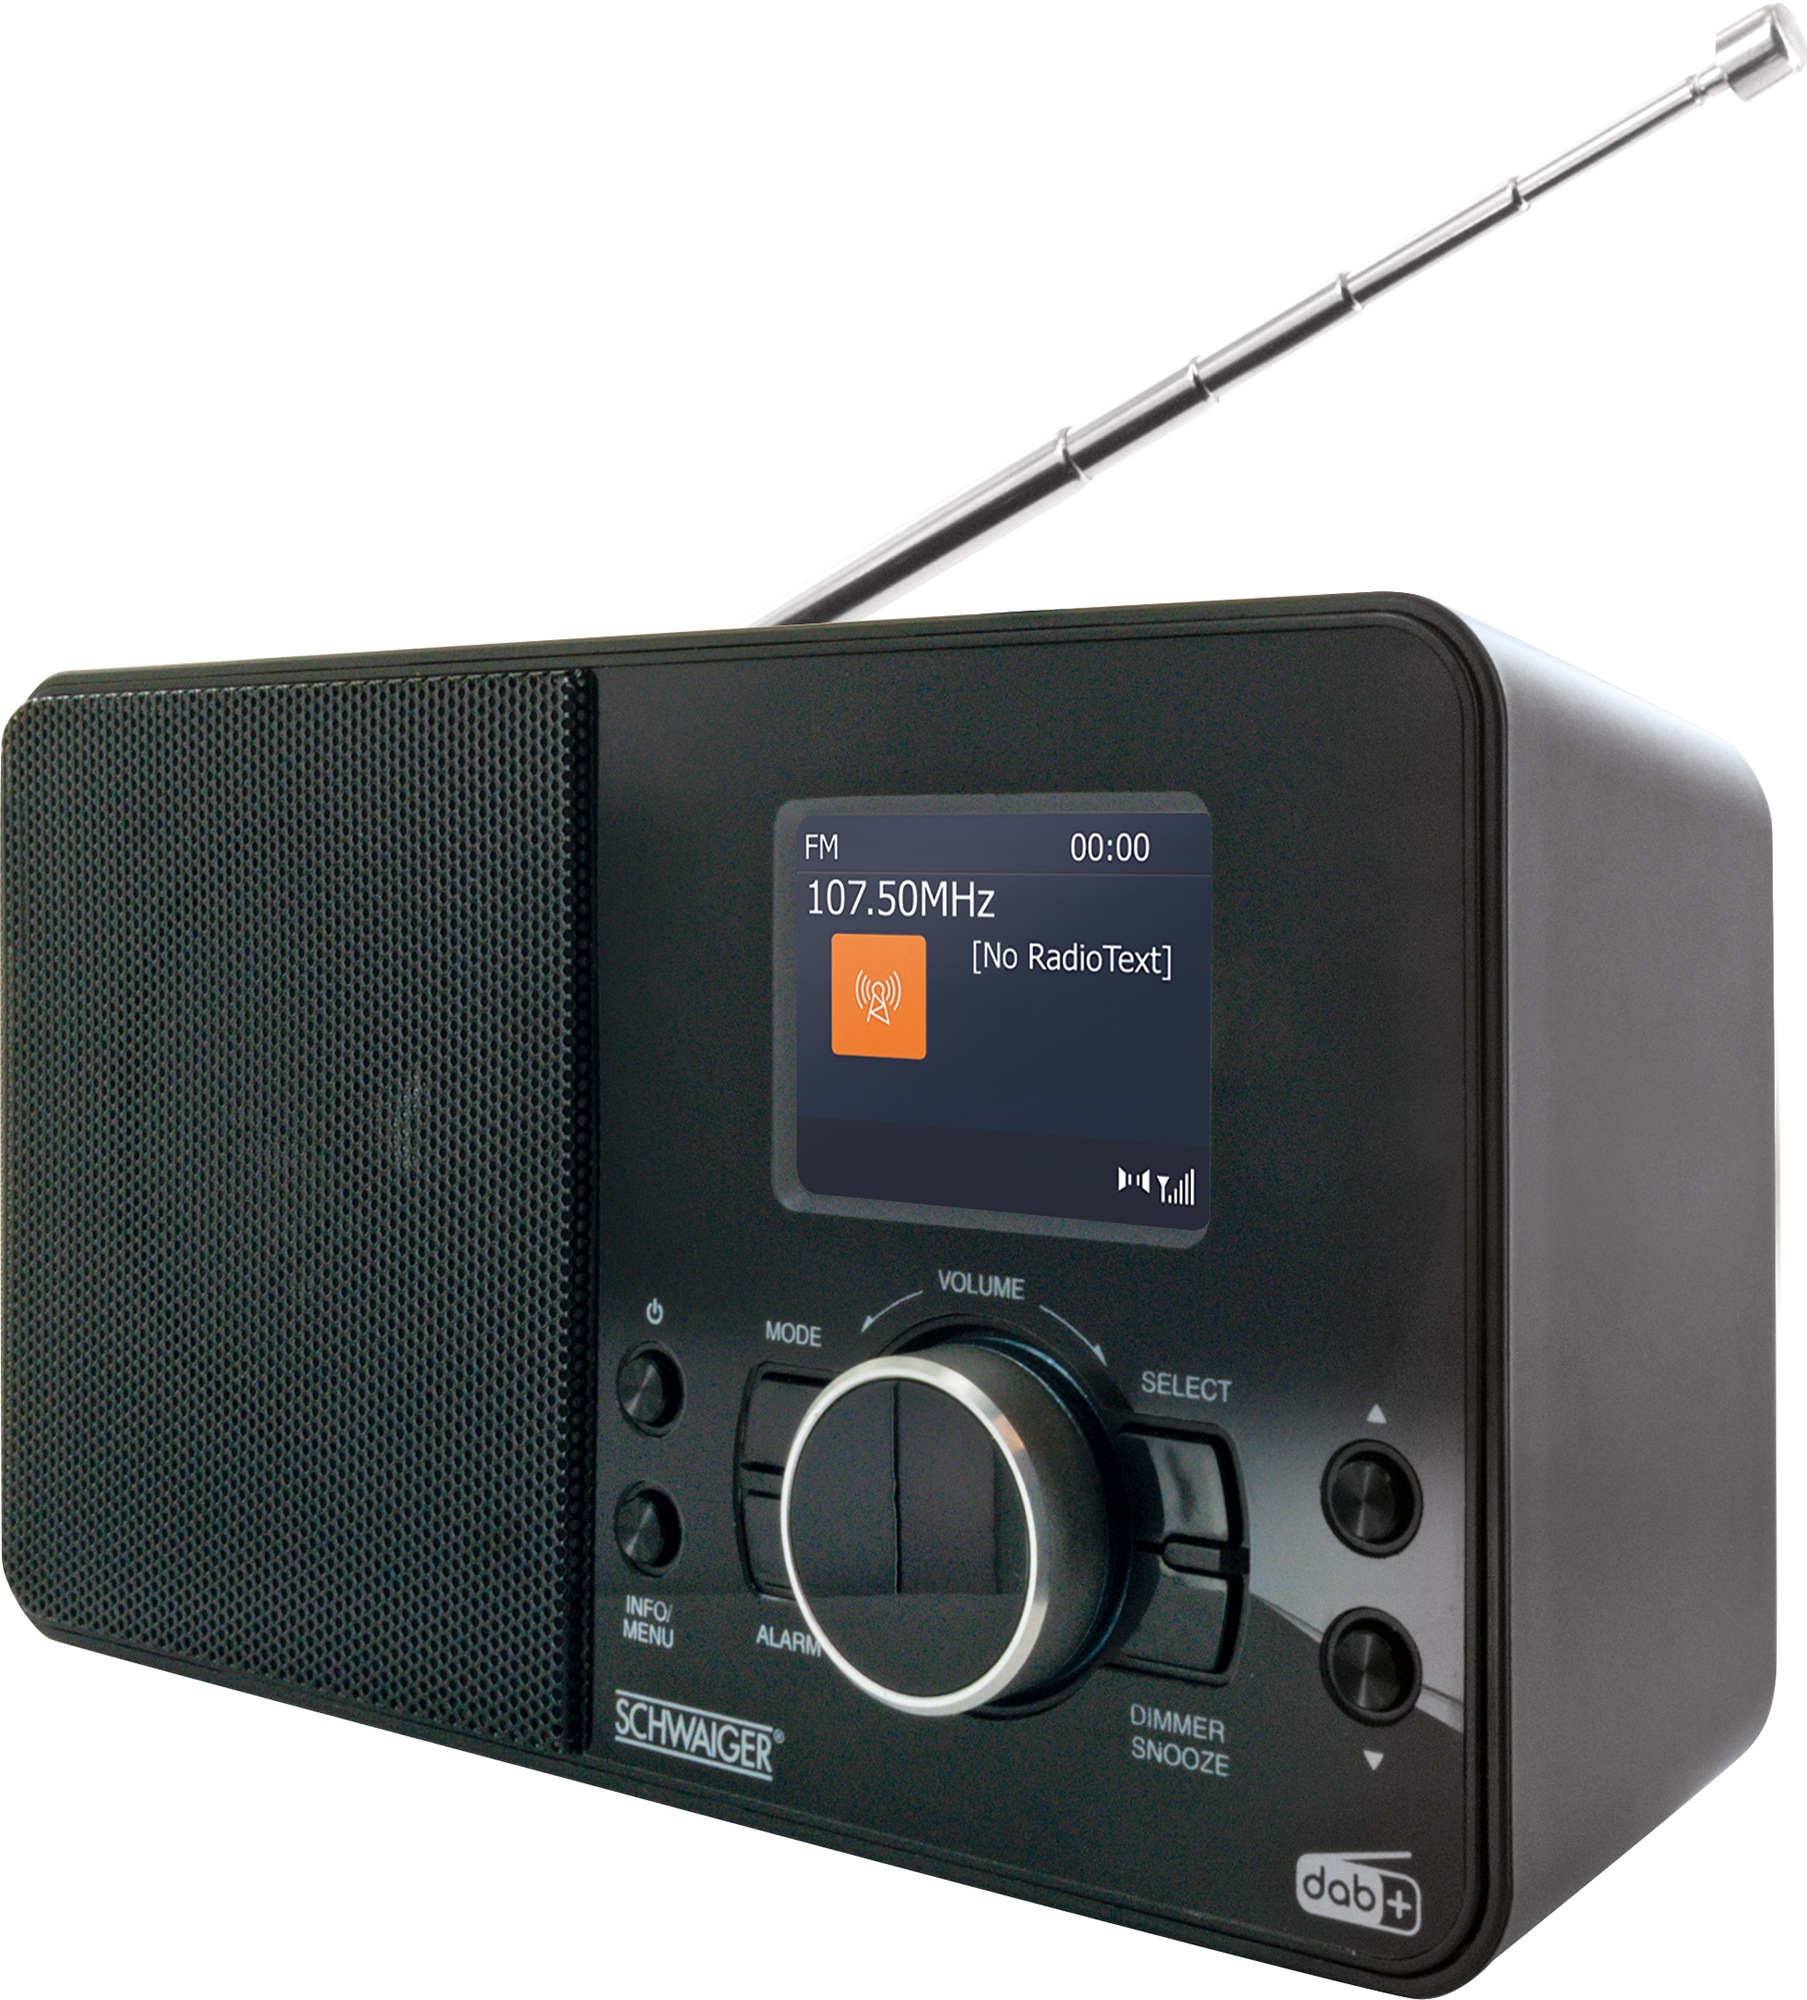 Schwaiger Digital Radio DAB/DAB+ tragbar mit UKW und DAB